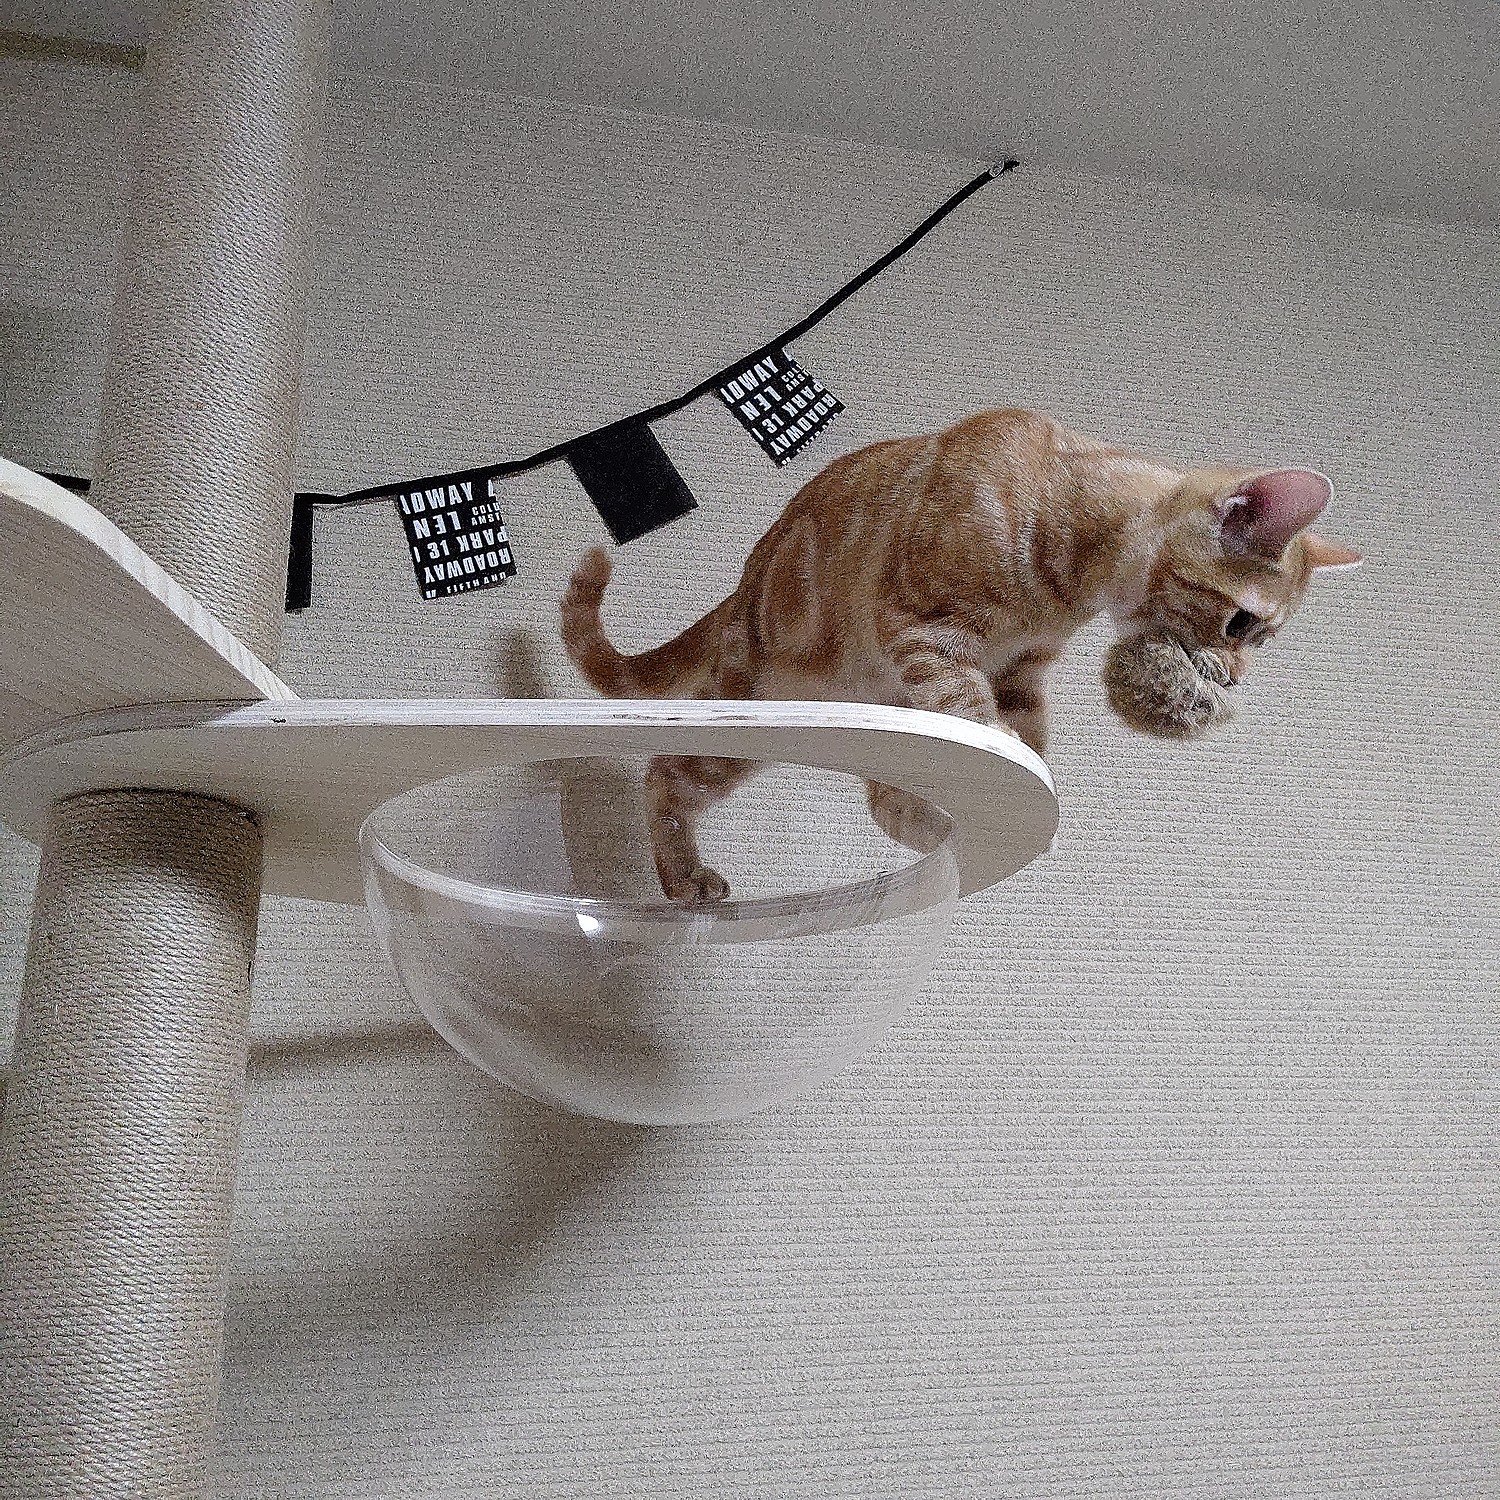 【楽天市場】【予約販売 発送時期注意】木登りタワー キャット宇宙船 拡張パーツ 大人気「木登りタワー」の追加・交換用 宇宙船 猫 360°視野 猫ベッド 透明 通気 猫用品 安全素材使用 猫